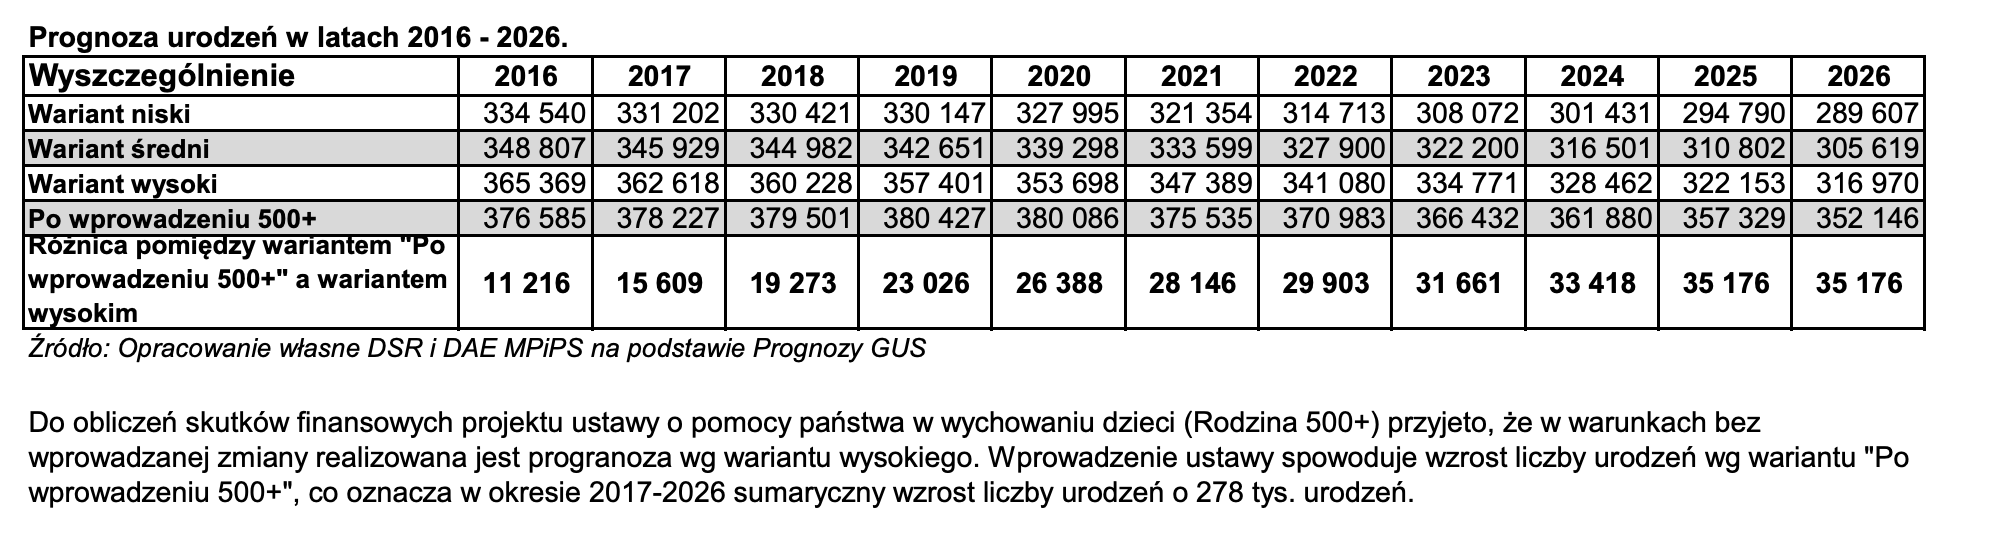 Prognoza urodzeń w latach 2016-2026 - opracowanie ministerstwa na podstawie prognozy GUS, źródło: MPiPS